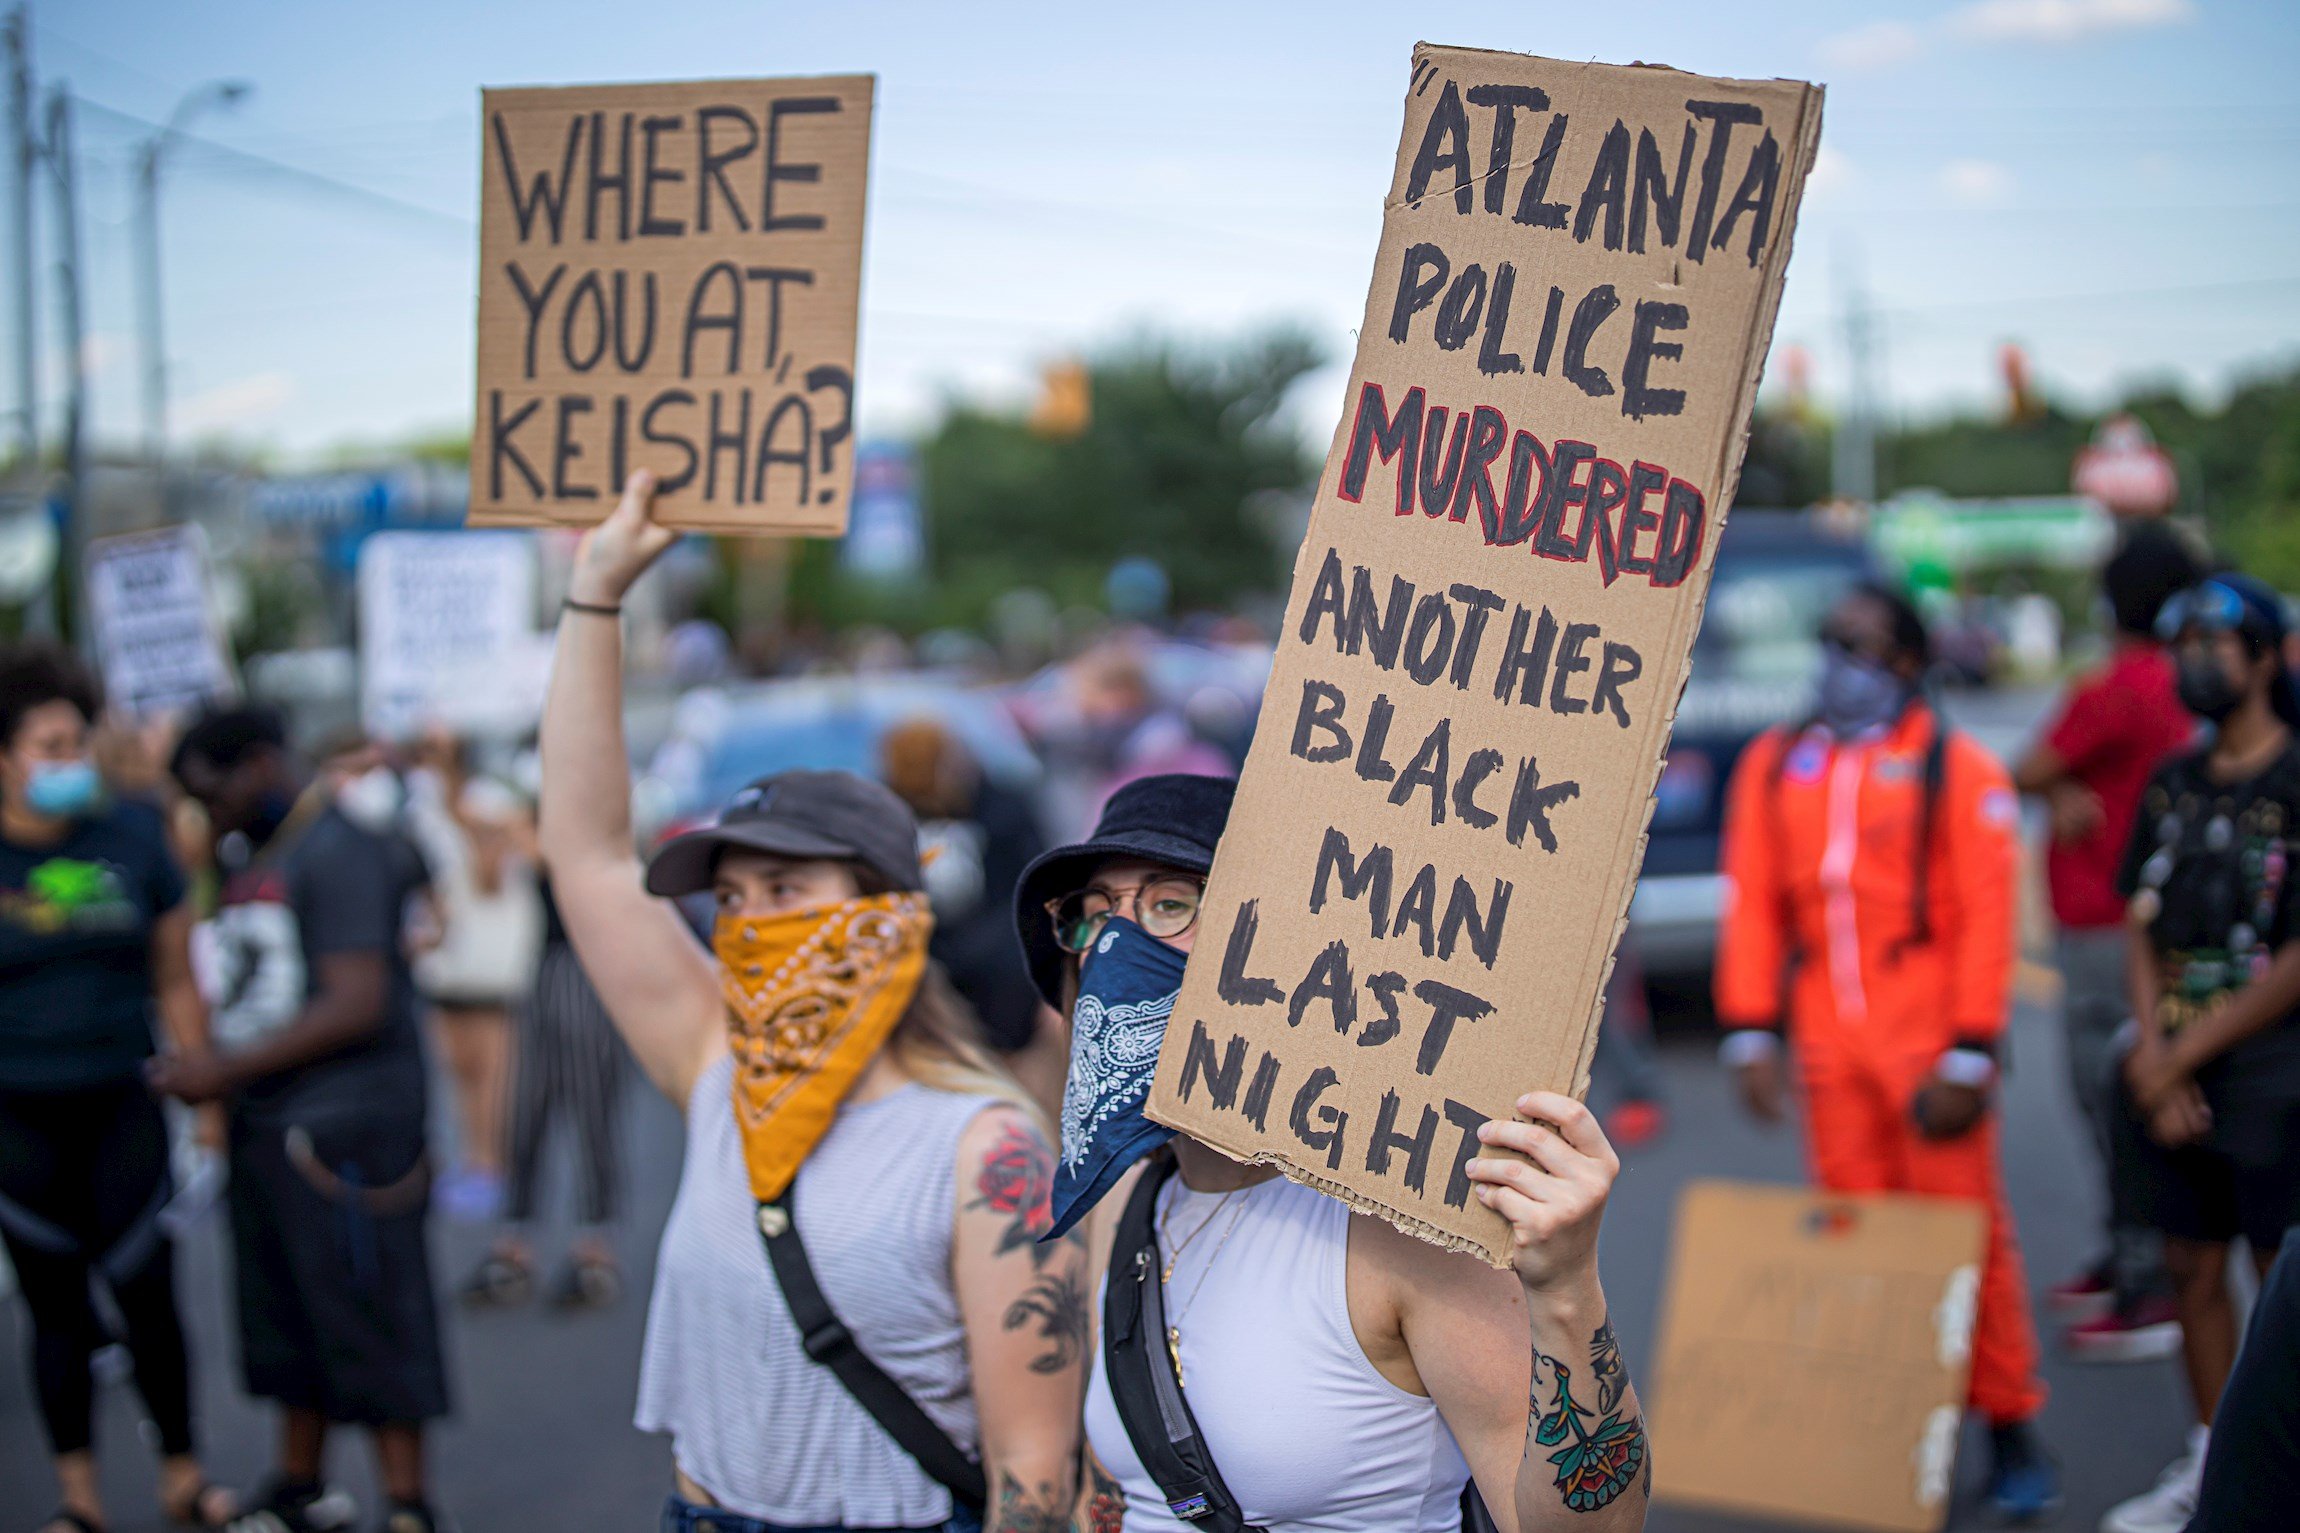 La policía mata a otro afroamericano en EEUU: vuelven las protestas